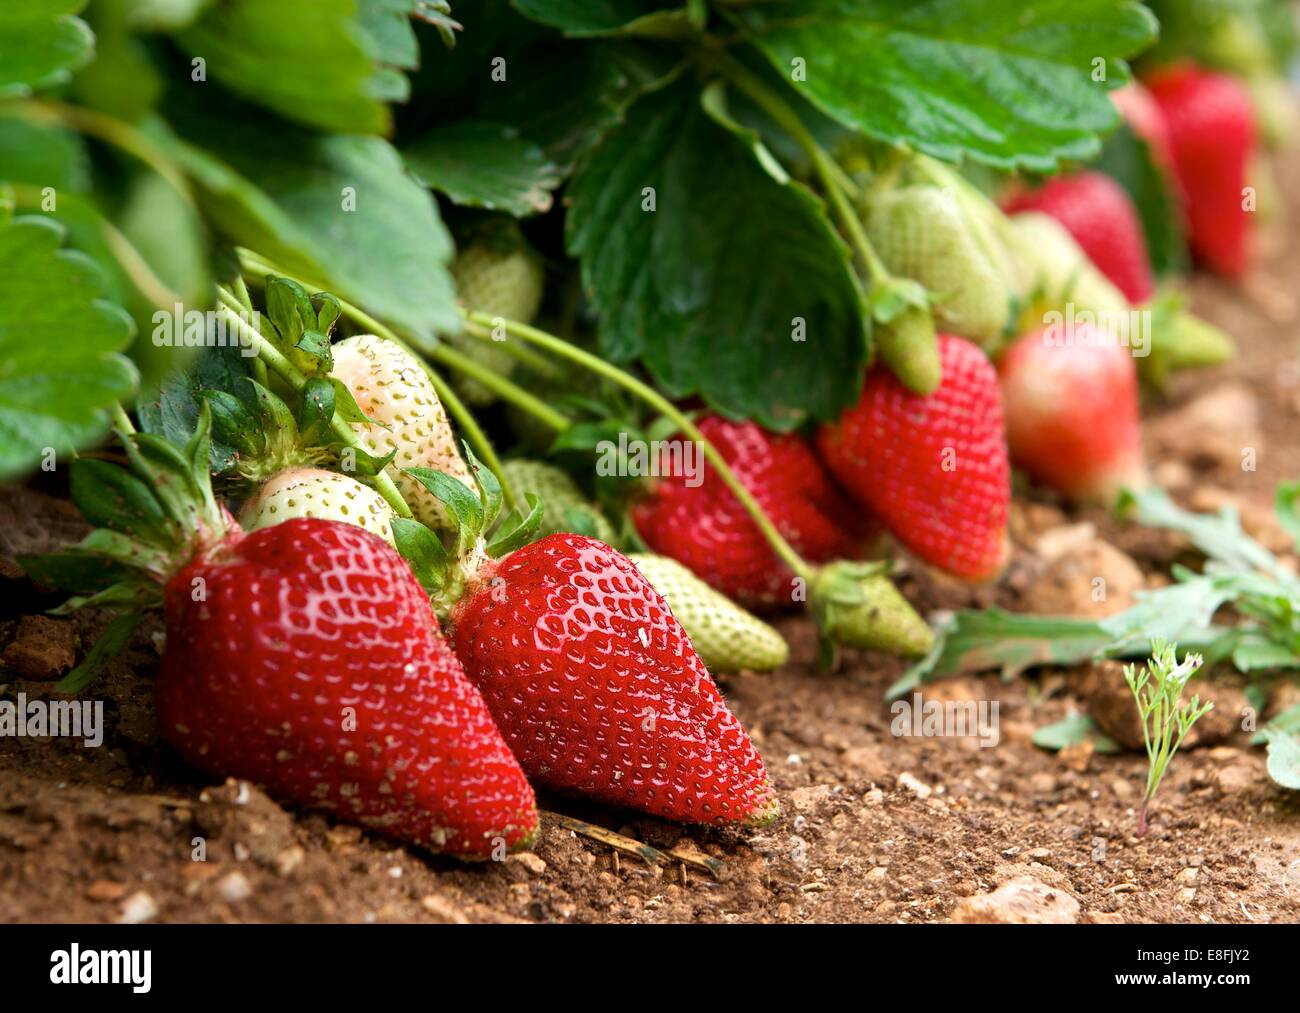 -Fotos – -Bildmaterial hoher und Alamy Auflösung Erdbeerpflanzen in